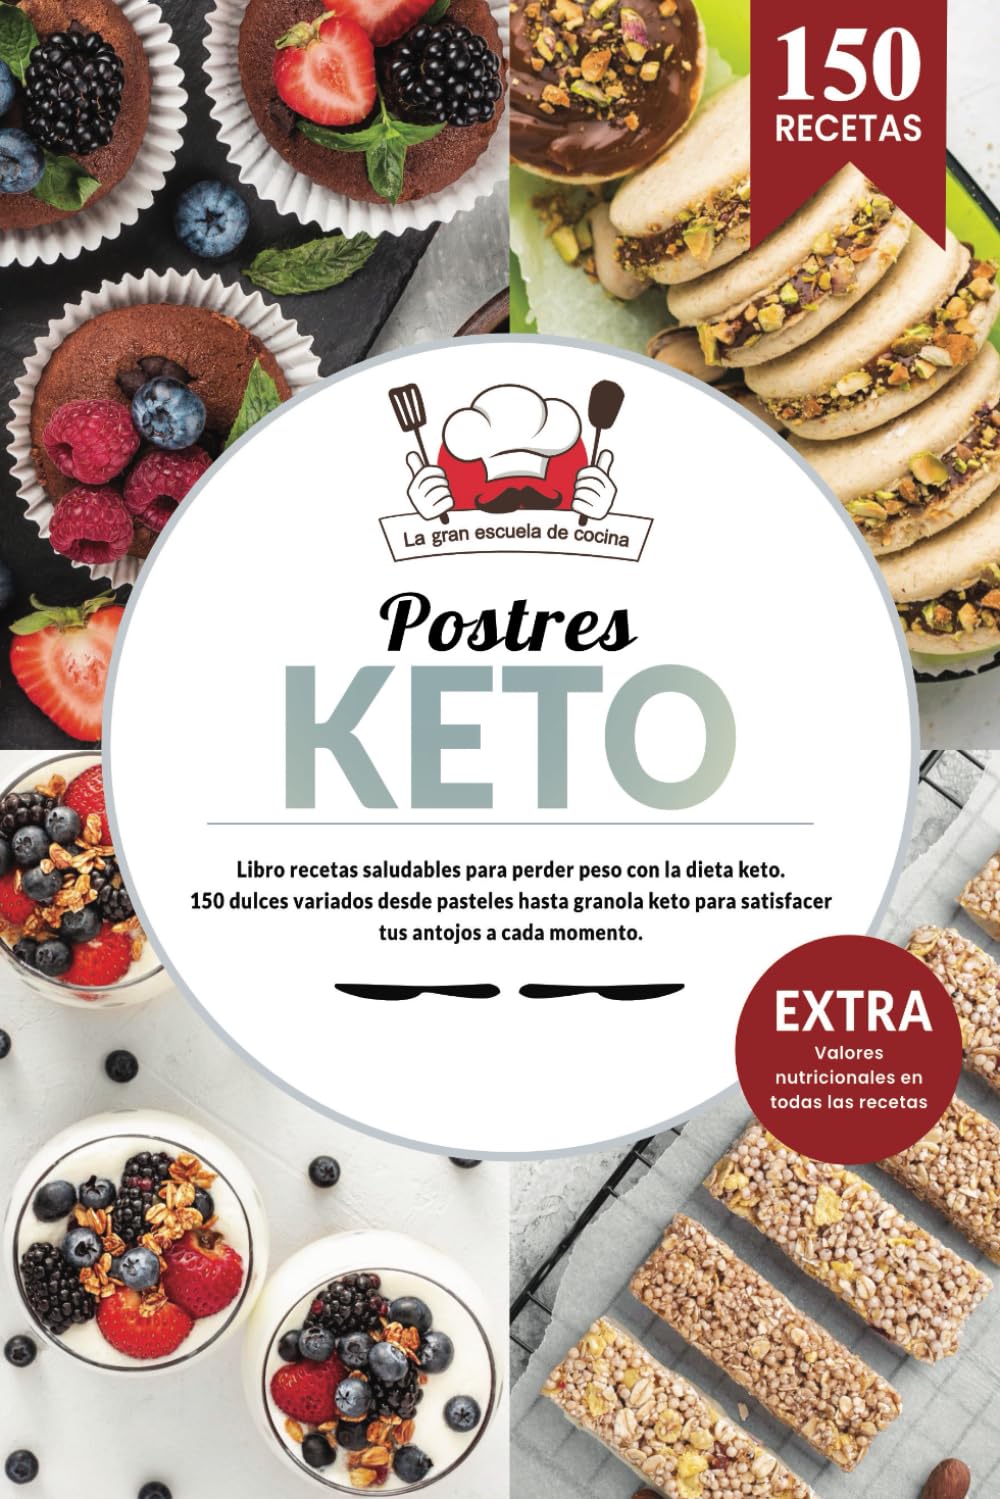 Postres KETO | Libro recetas saludables para perder peso con la dieta keto. 150 dulces variados des de pan keto hasta granola keto para satisfacer ... los valores nutricionales. (Spanish Edition)